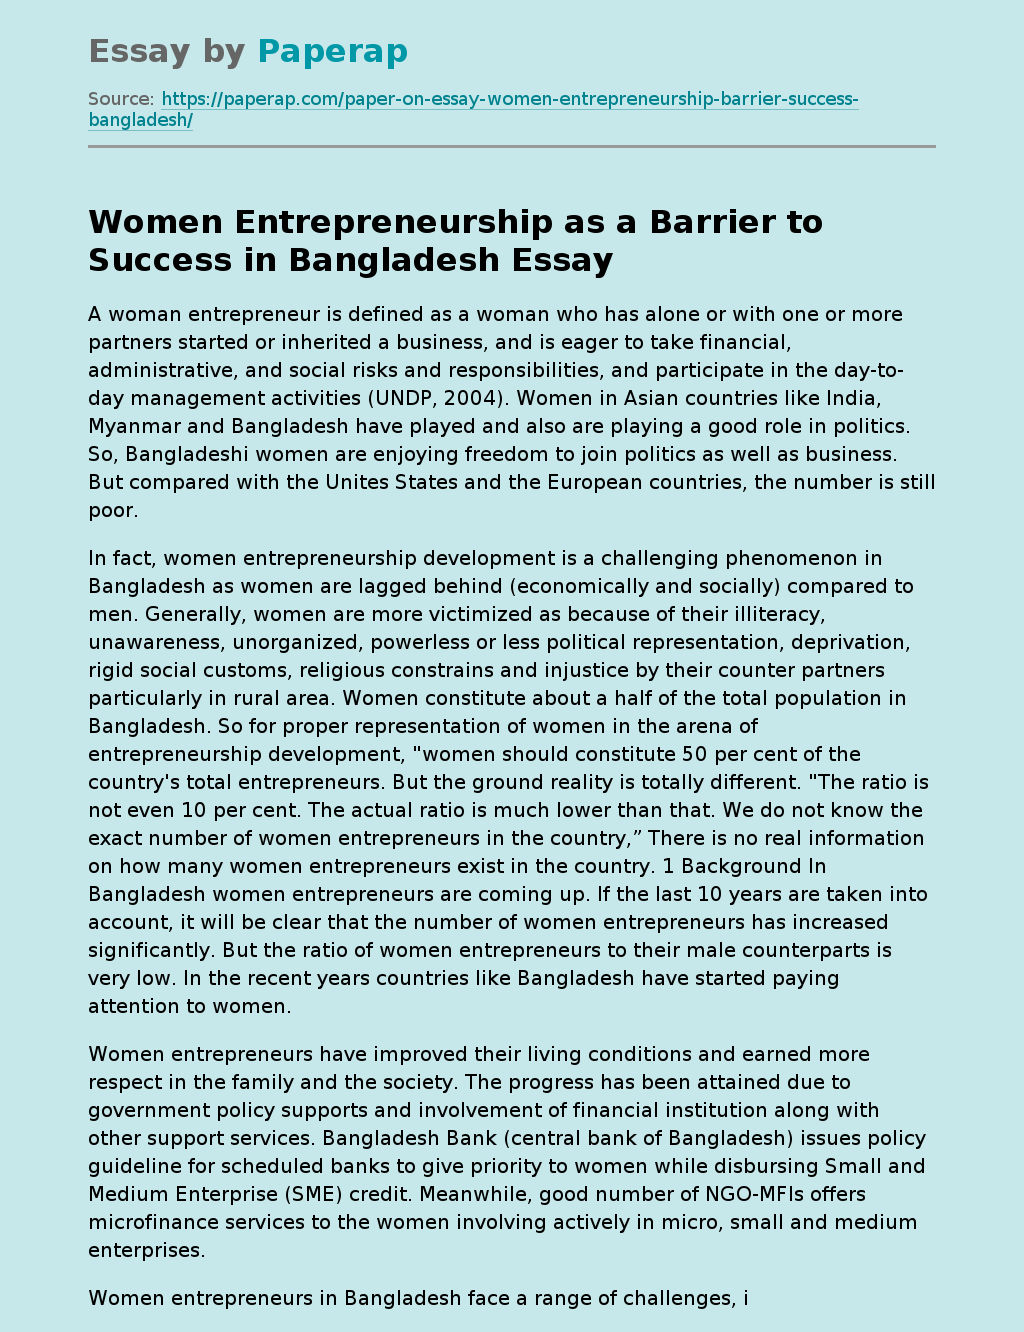 Women Entrepreneurship as a Barrier to Success in Bangladesh